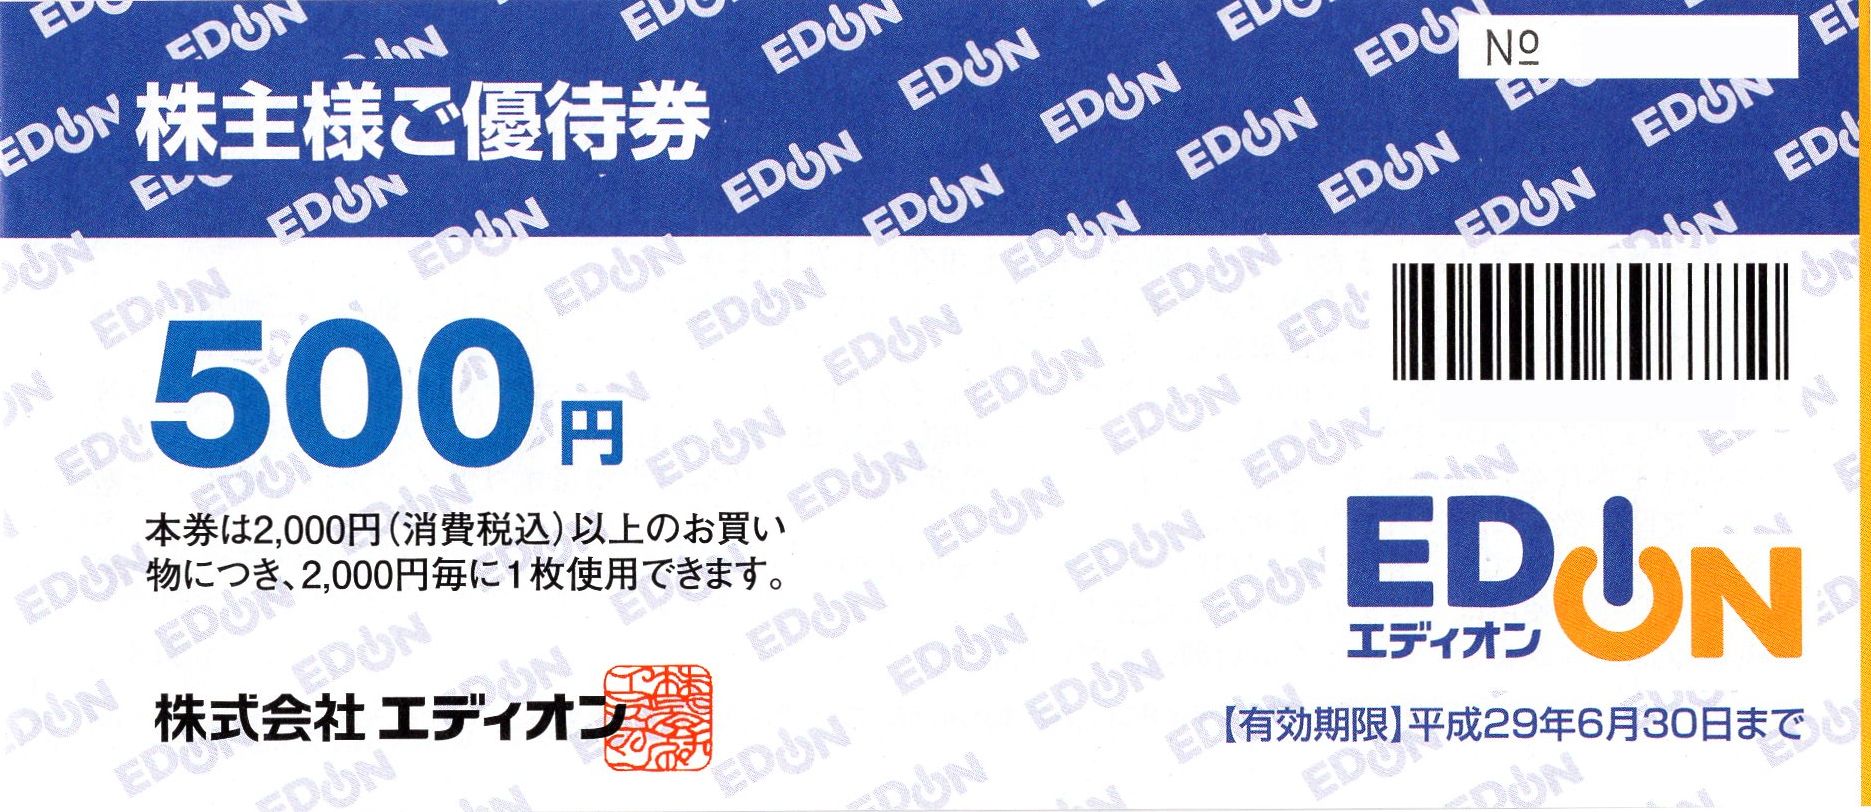 エディオン EDION 株主優待割引券 65000円分 クリックポスト送料込み ...